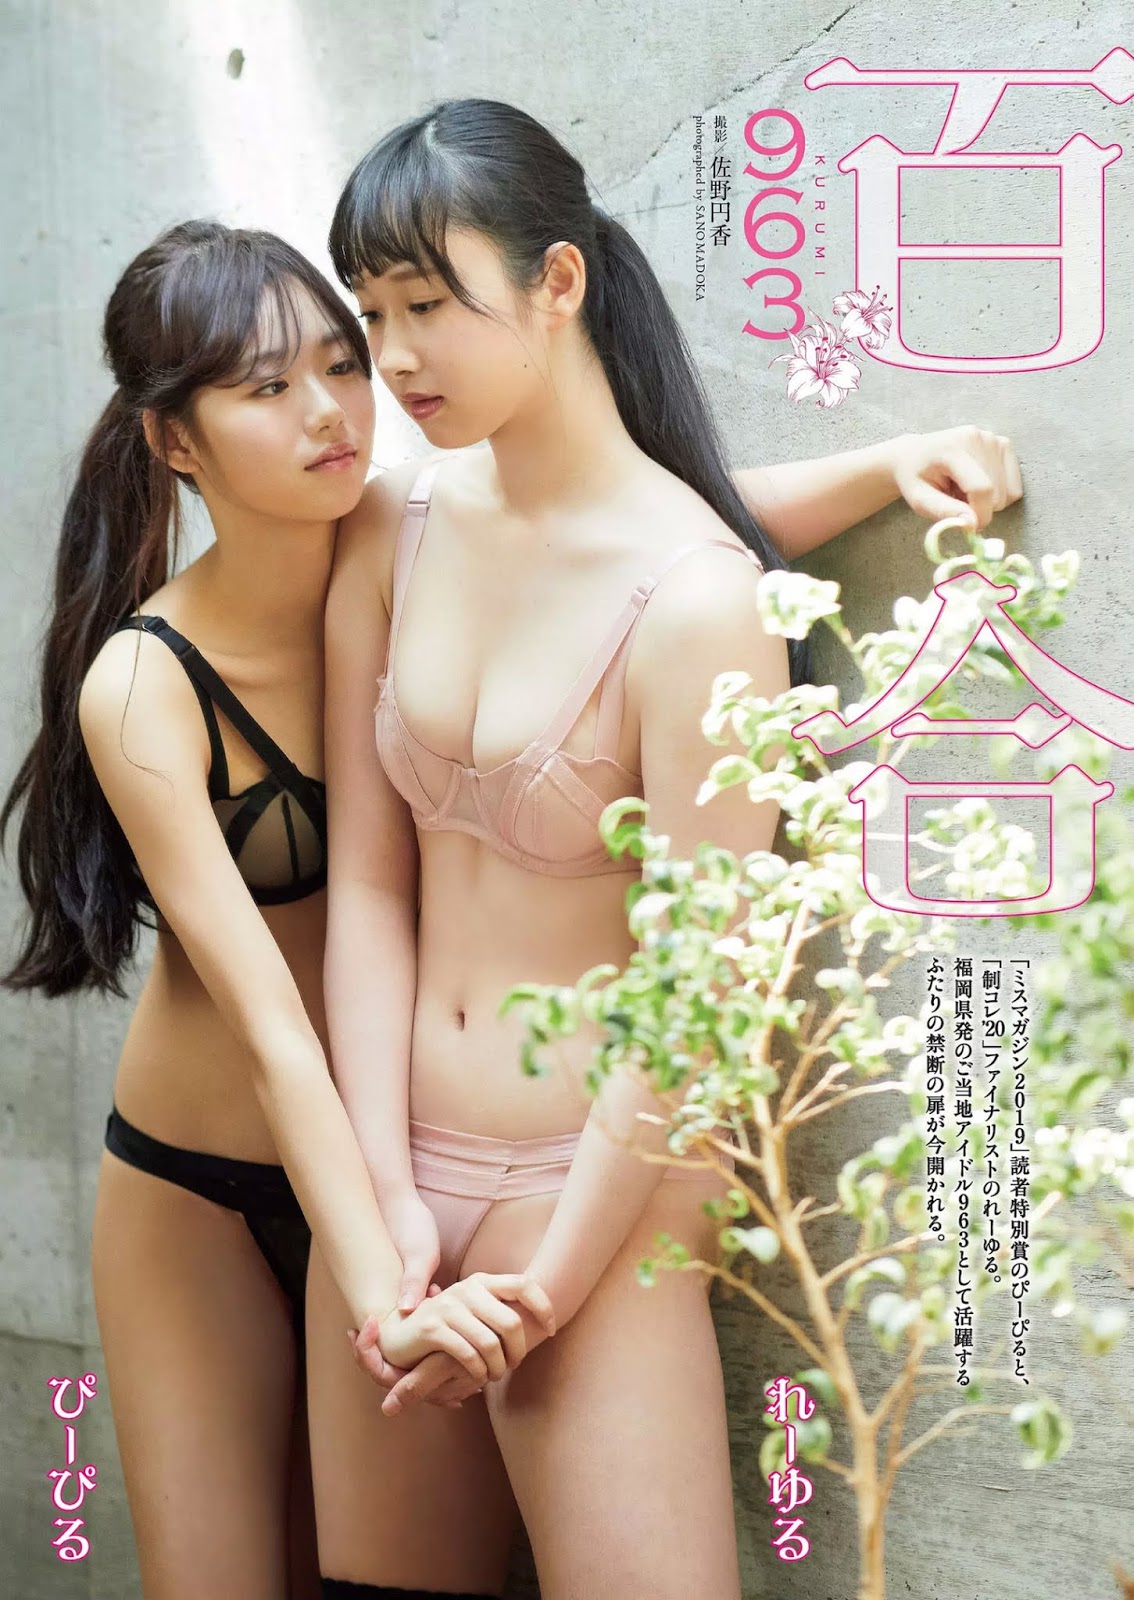 ぴーぴる & れーゆる, Weekly Playboy 2020 No.33-34 (週刊プレイボーイ 2020年33-34号)